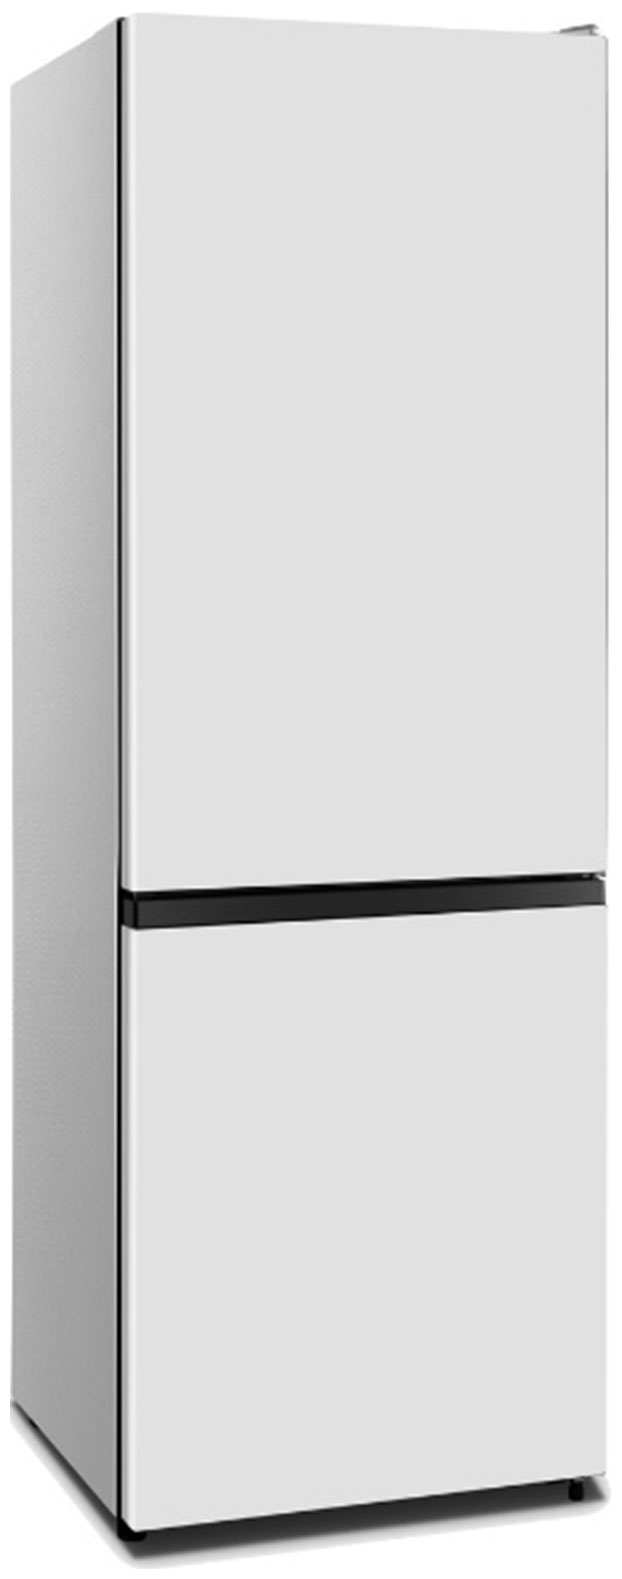 Холодильник HISENSE RB372N4AW1 белый холодильник hisense rq 563n4gb1